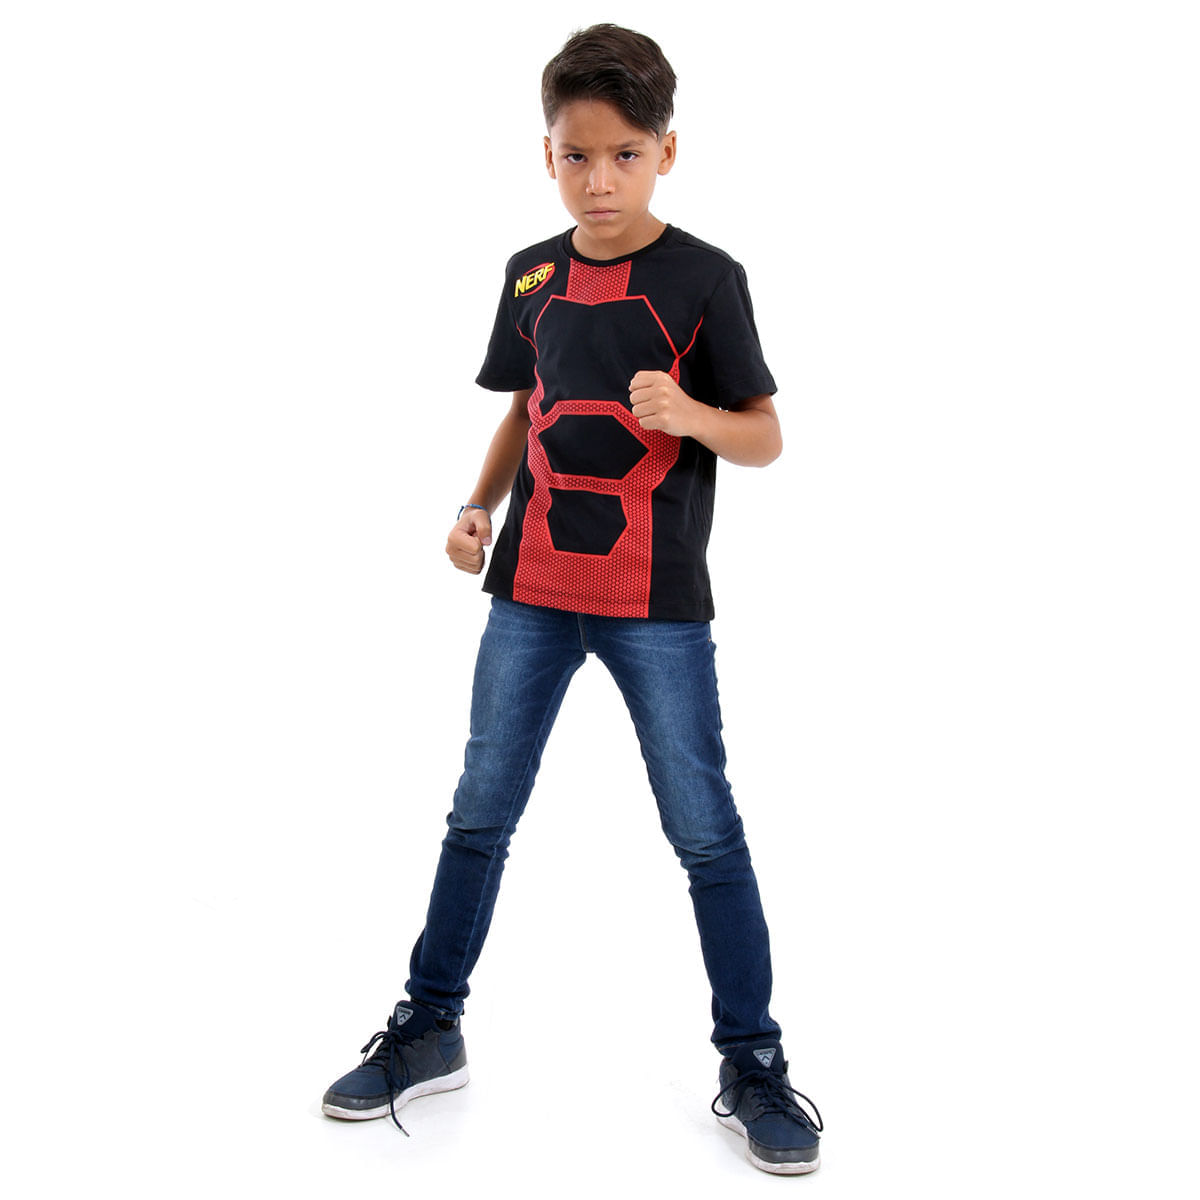 Camiseta Nerf Vermelho - Sulamericana P / UNICA